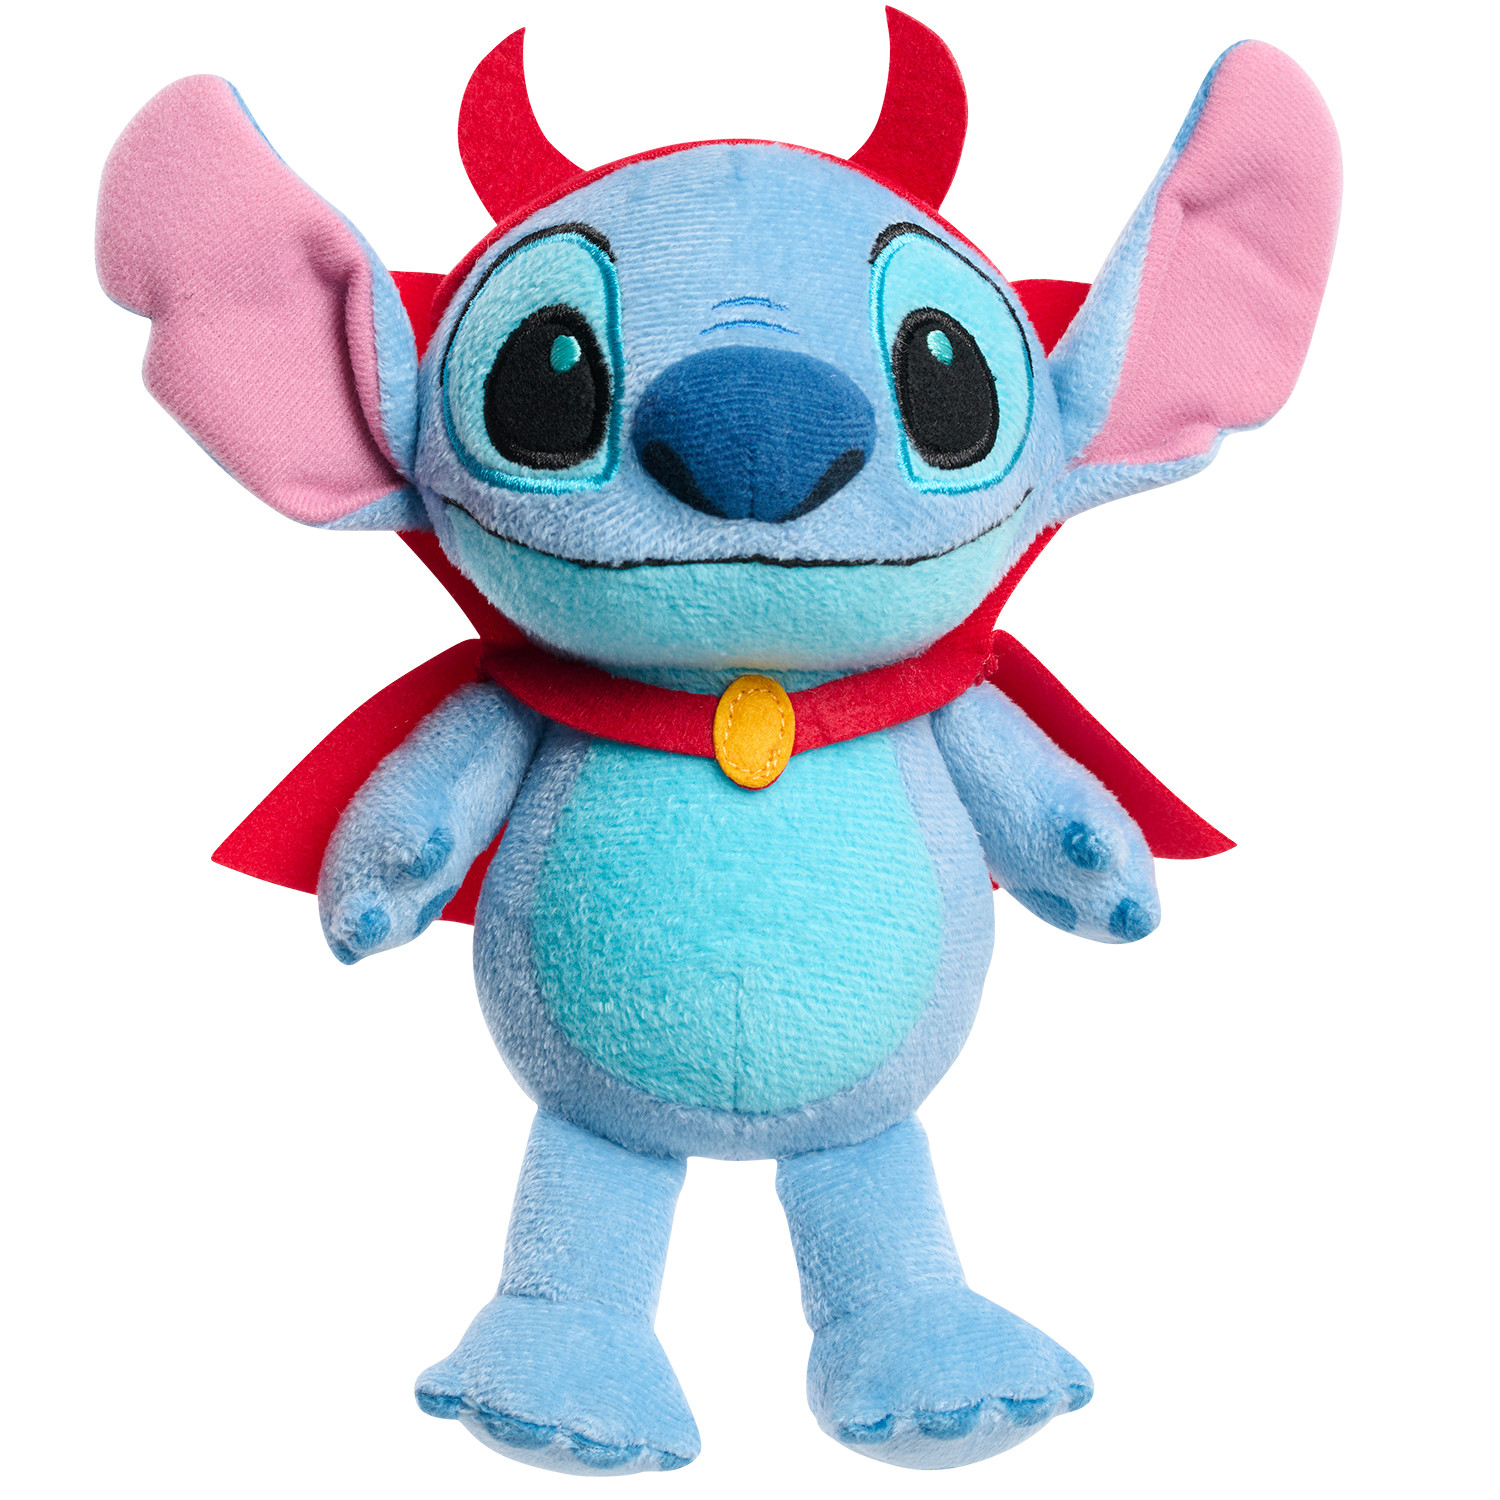 Disney Lilo and Stitch Toys in Lilo and Stitch